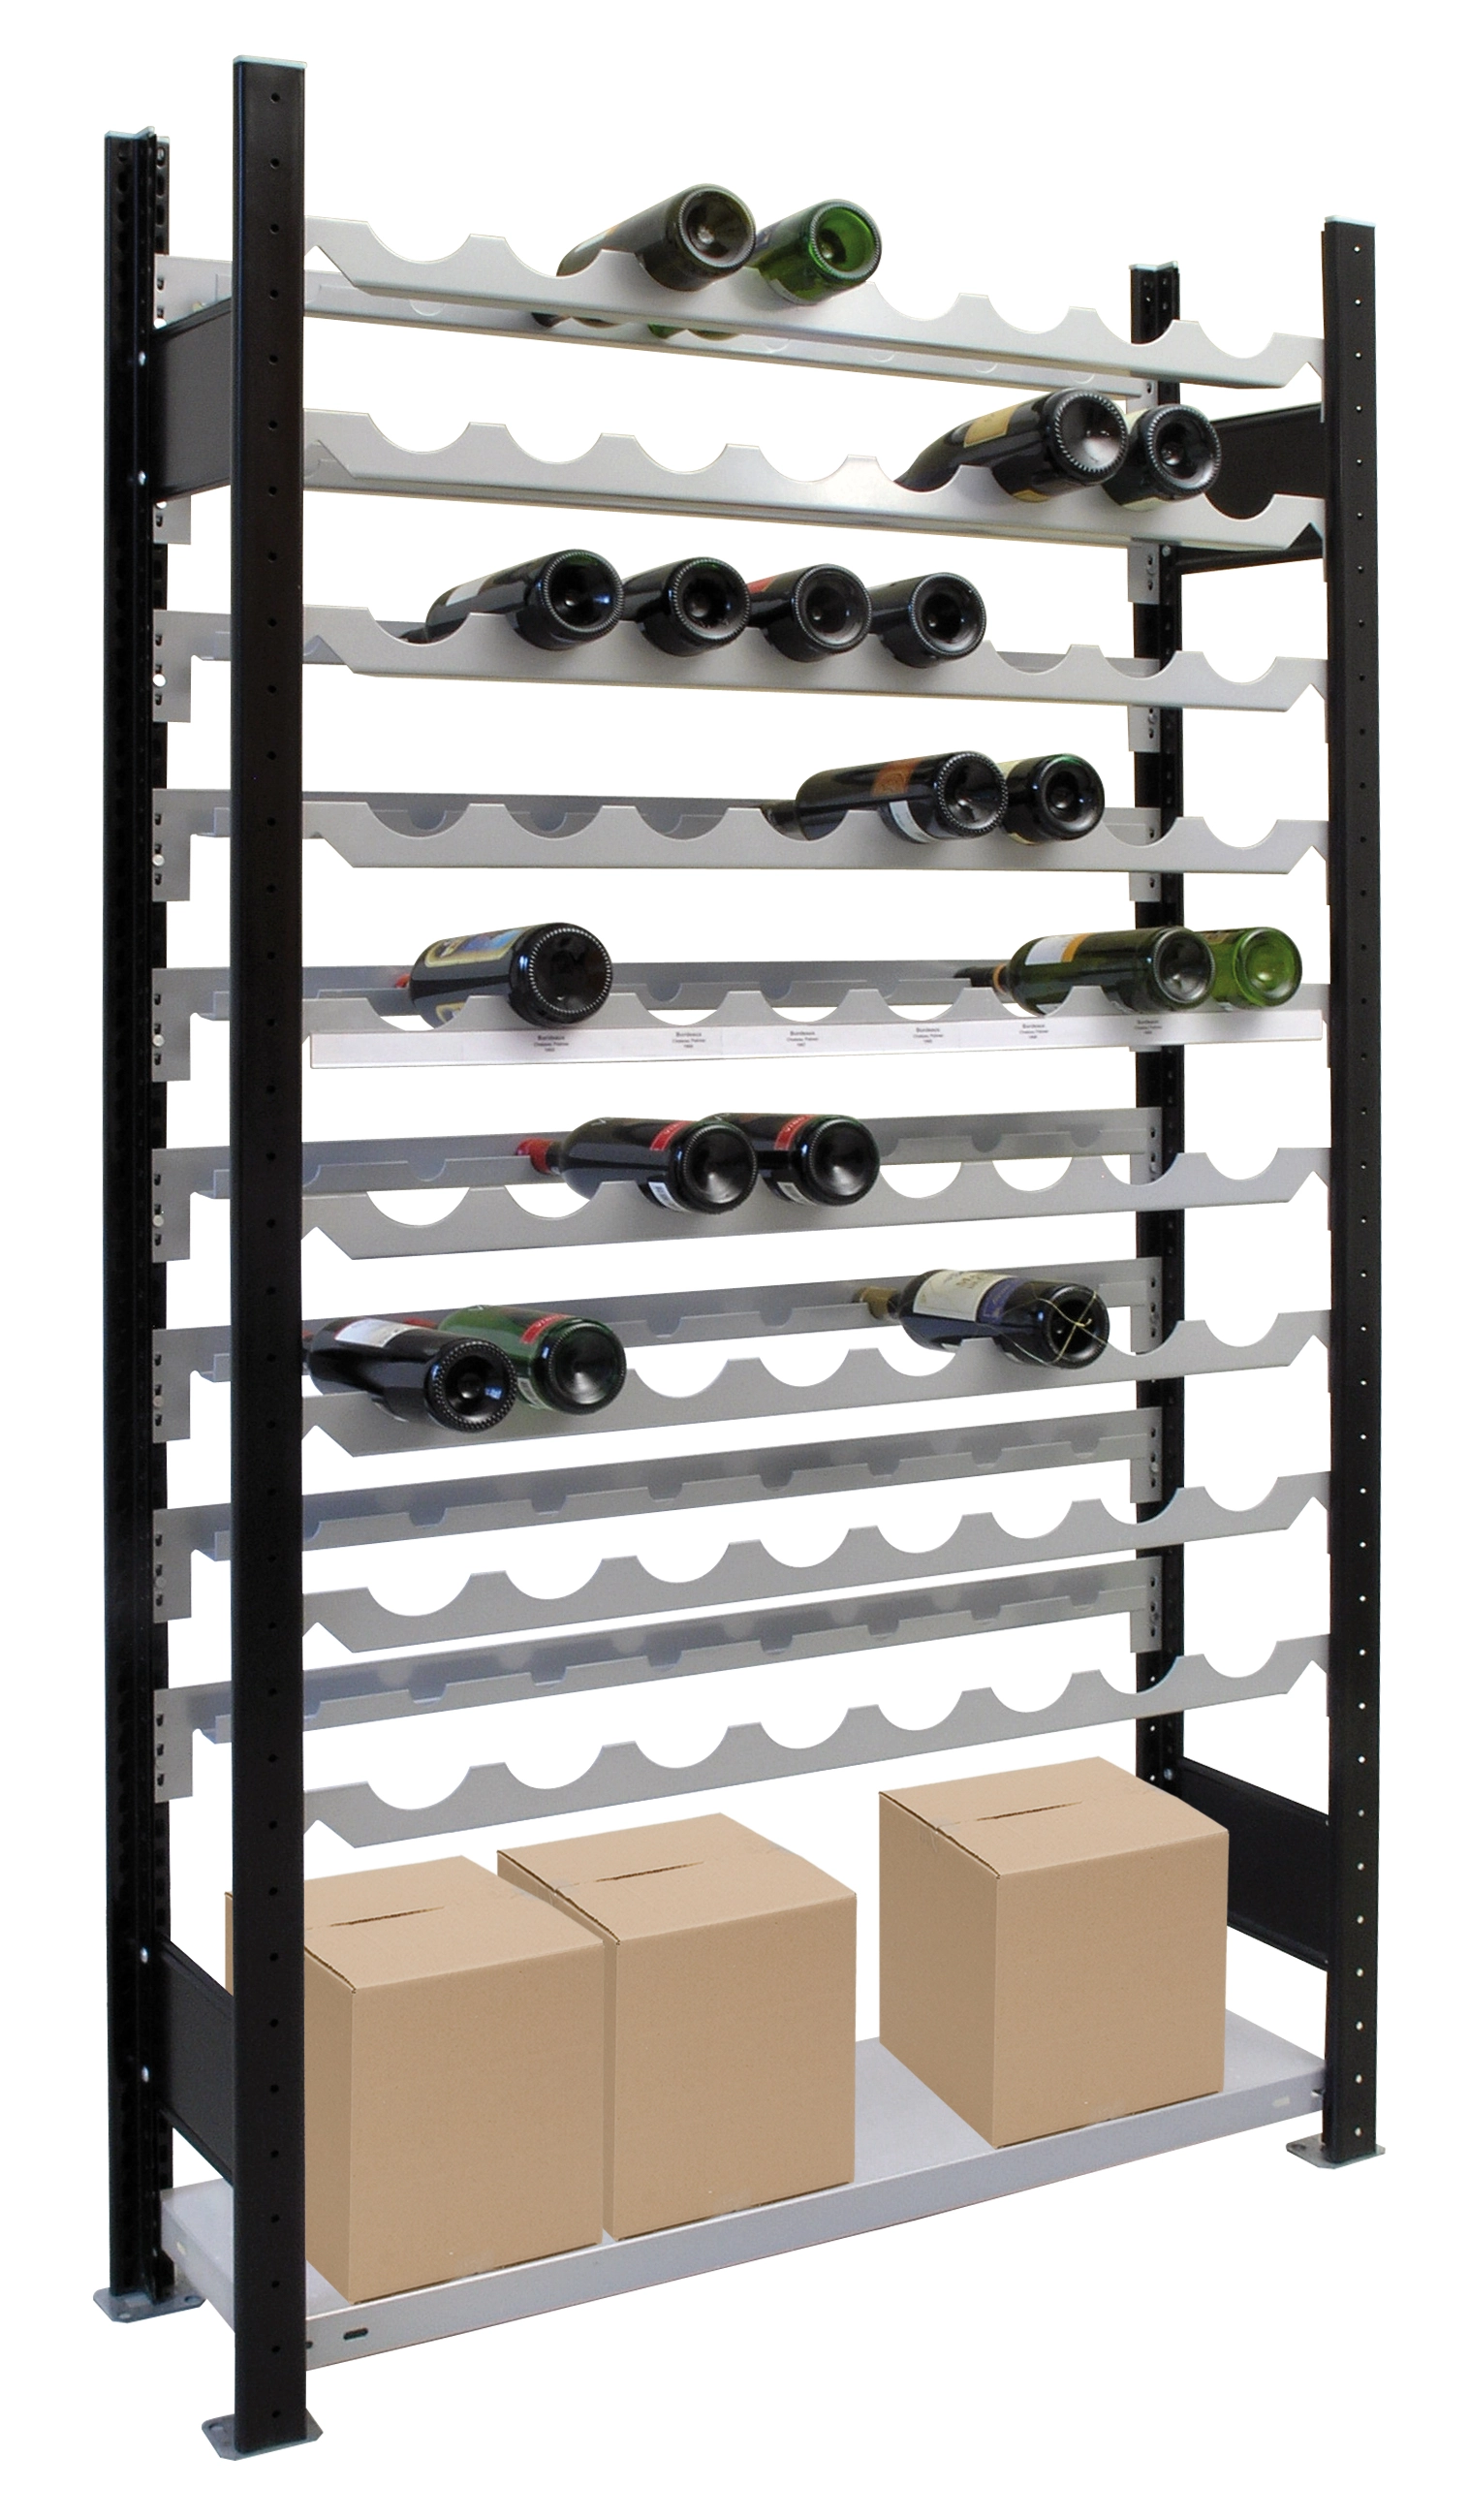 Weinregal für bis zu 96 Flaschen, 230x100x25 cm (HxBxT), Traglast pro Ebene 85 Kg, schwarz-silber